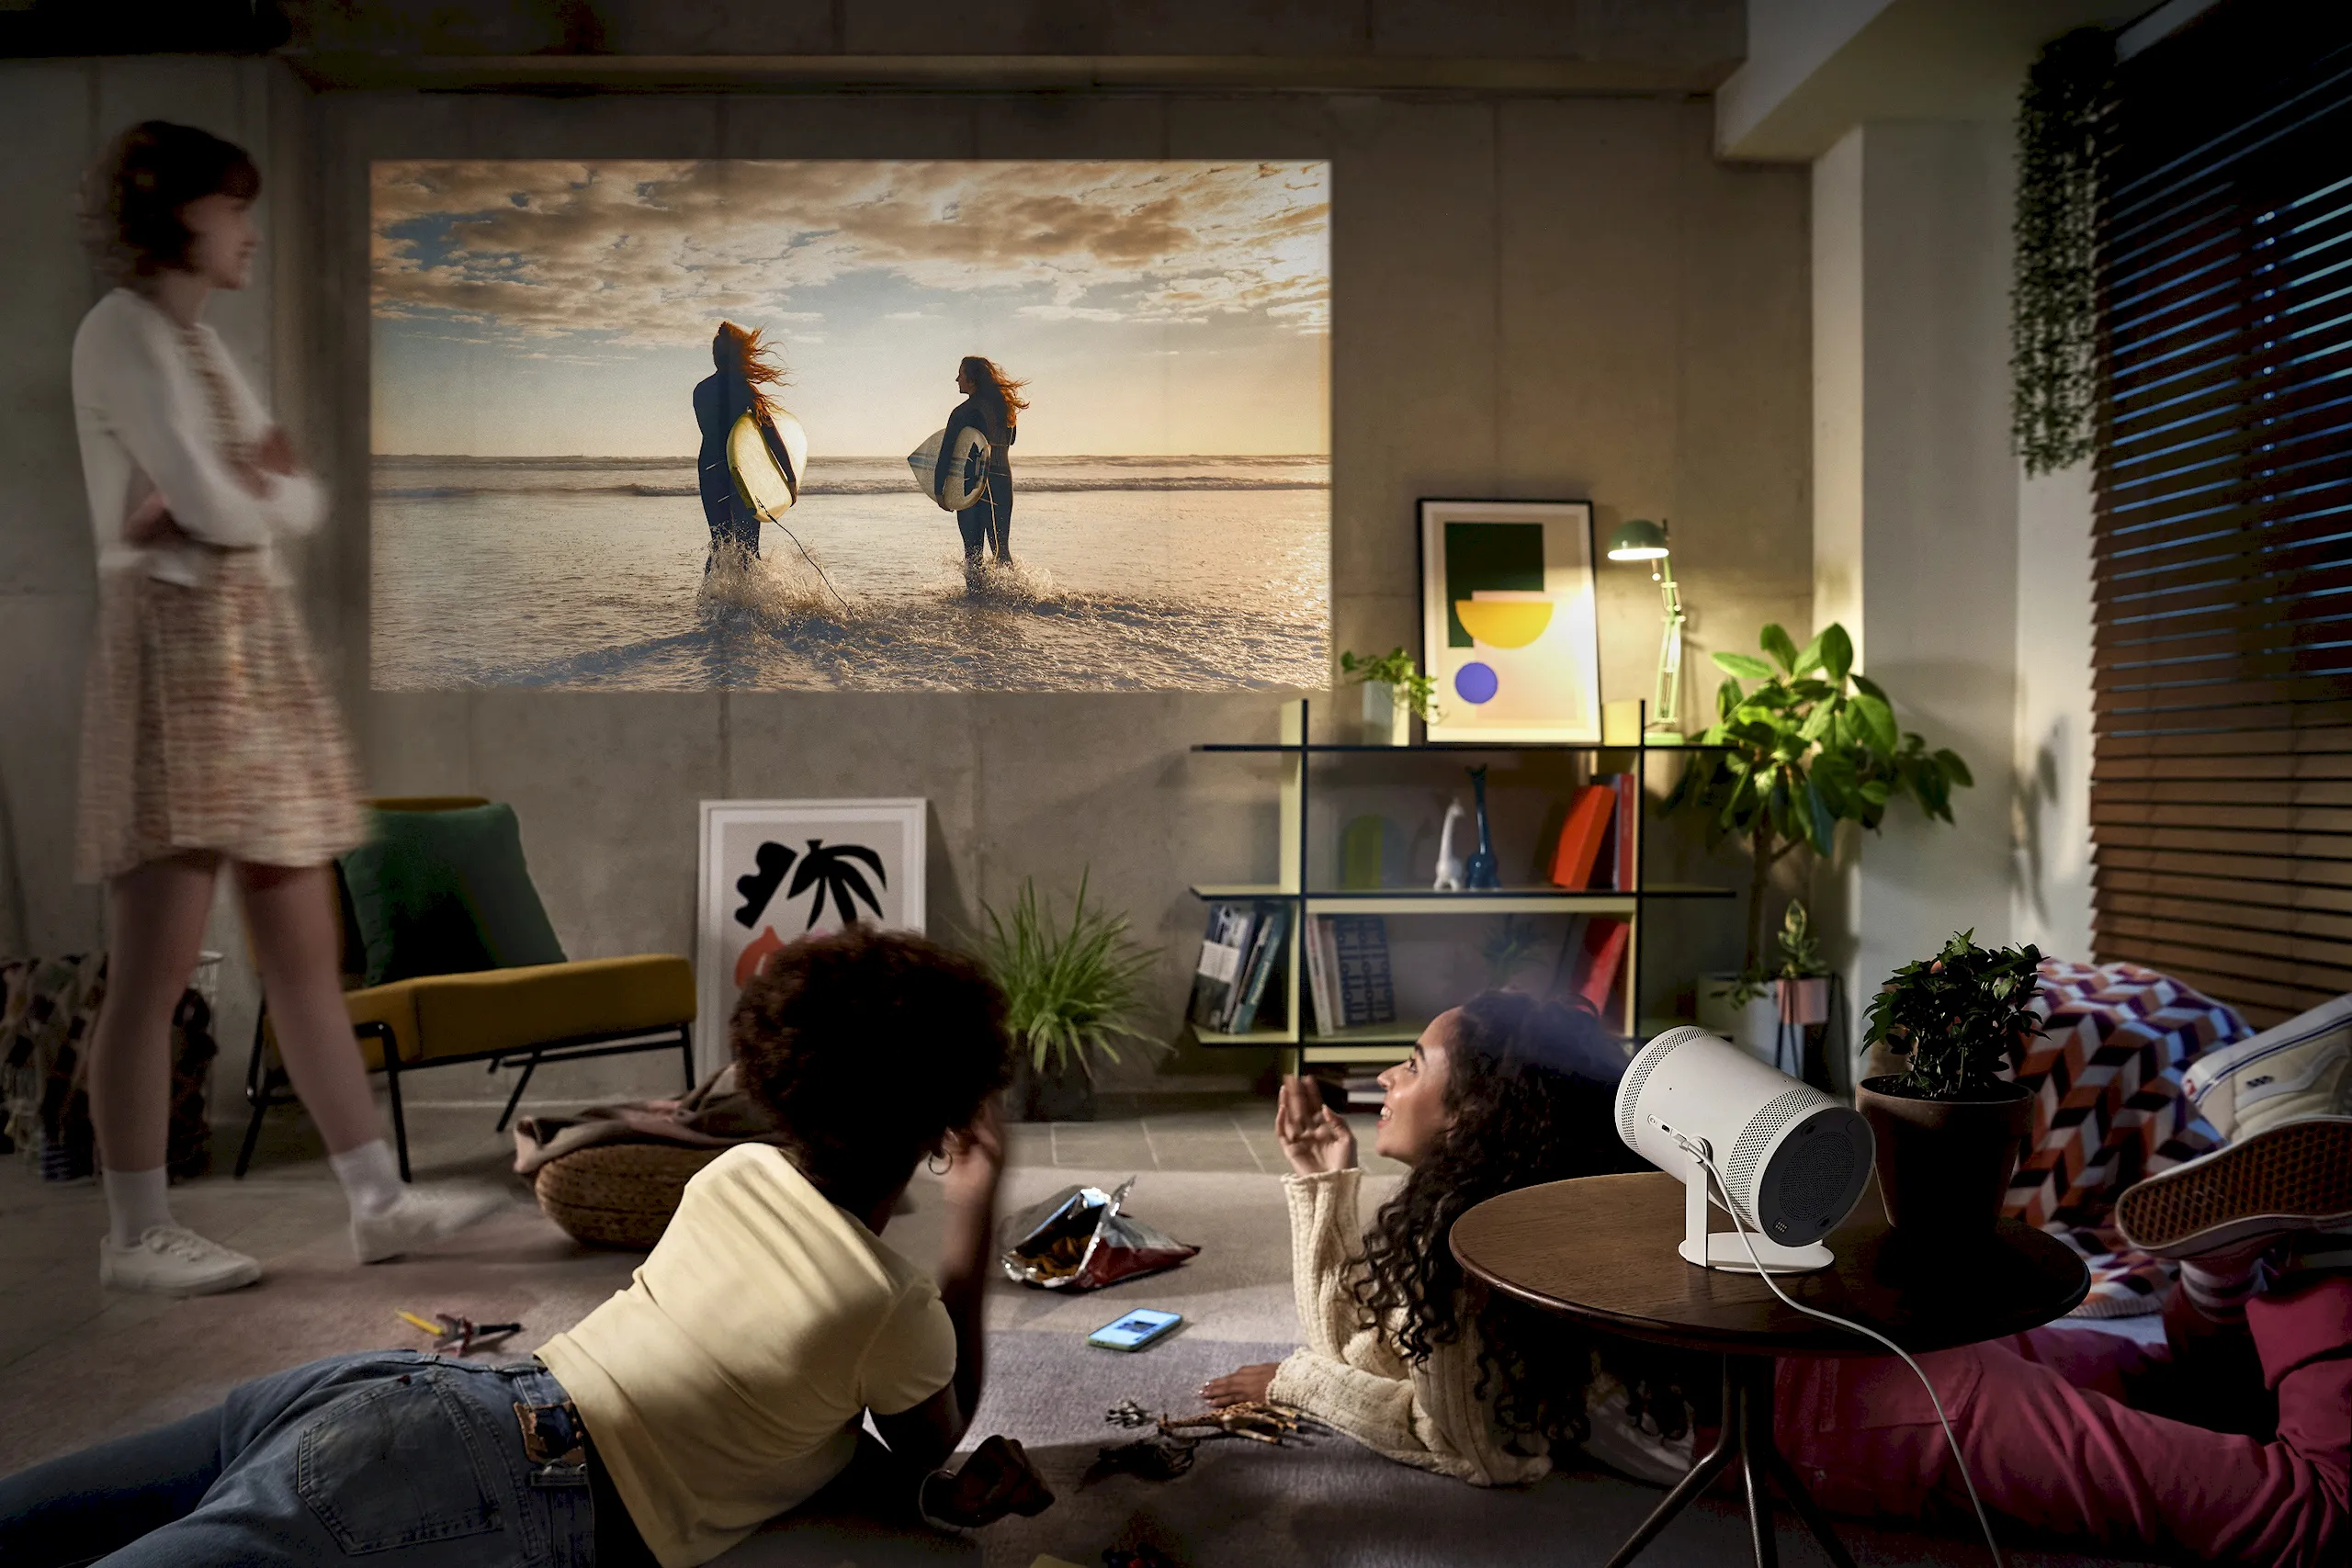 Samsung ra mắt máy chiếu The Freestyle thế hệ 2 tại Việt Nam, mở rộng nội dung trình chiếu và giải trí theo cách chưa từng có